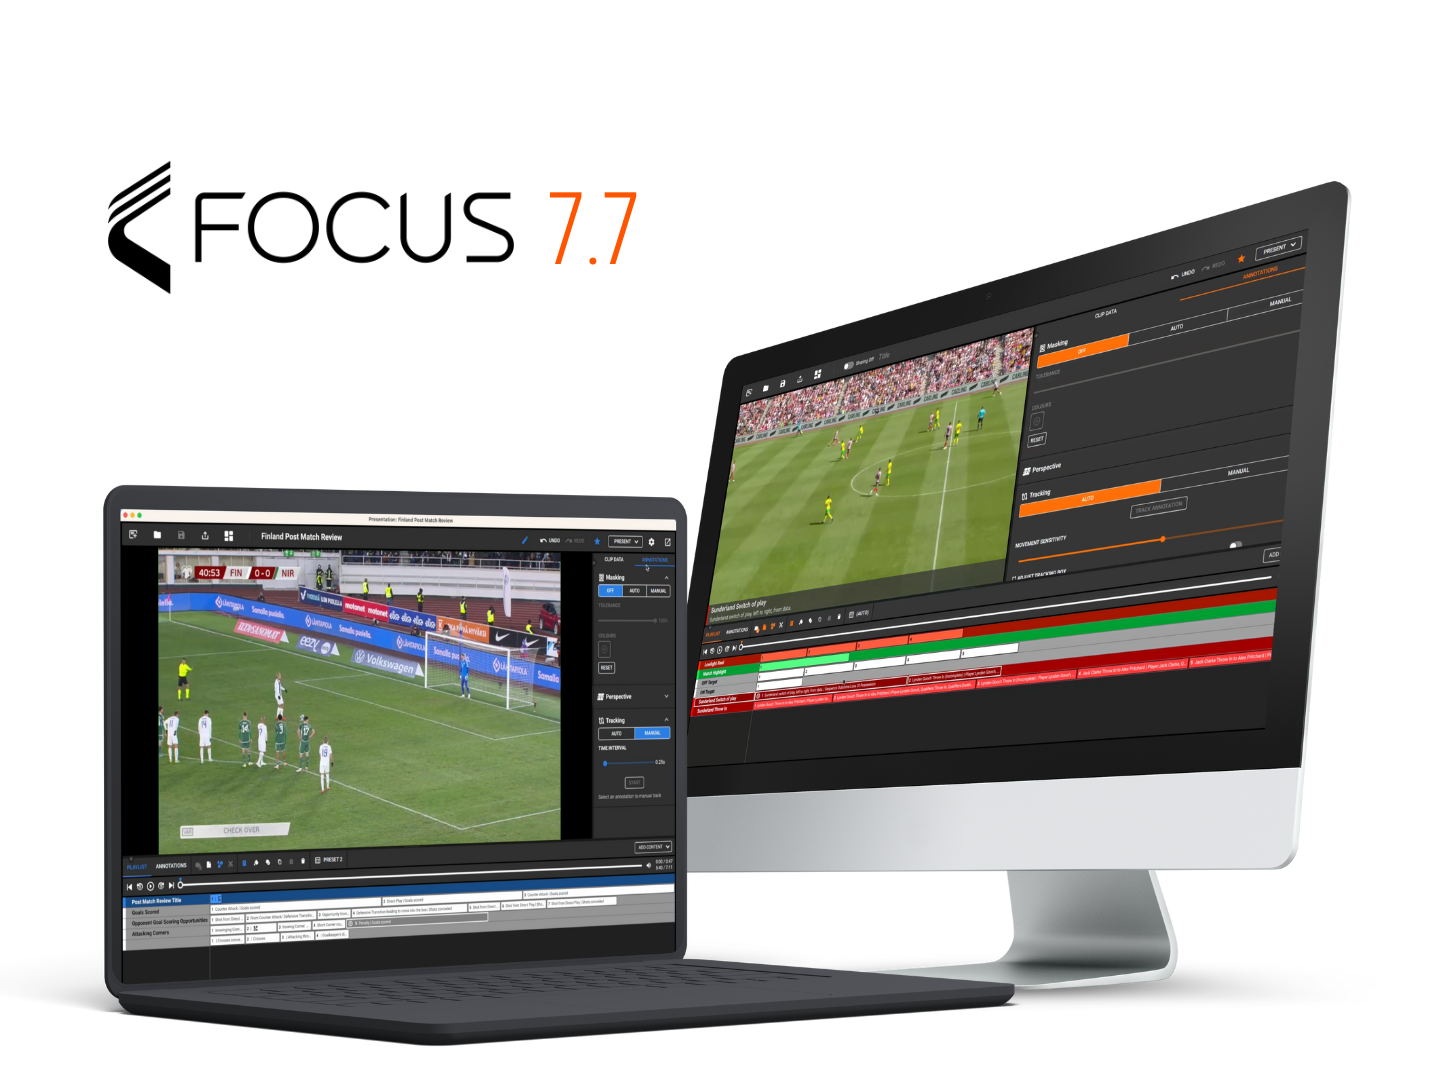 Focus 7.7 プラットフォームのサッカー分析インターフェイスを表示するラップトップ、デスクトップ、スマートフォンなどのさまざまなデバイス。デバイスはオレンジ色の背景の円形パターンで配置されています。